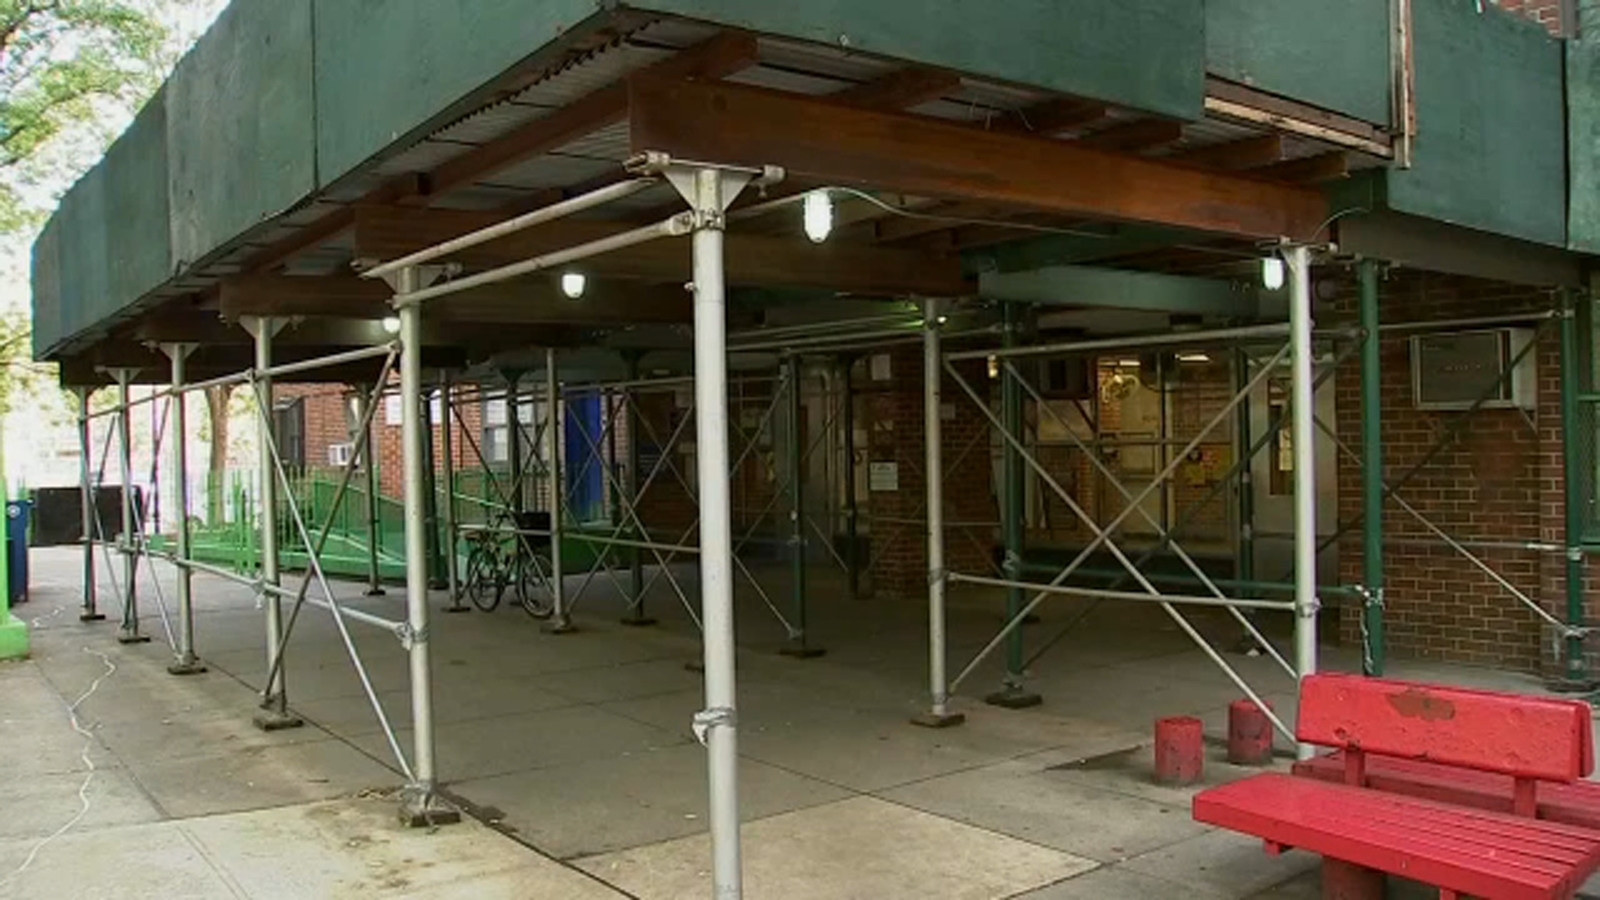 Mayor Eric Adams plans to overhaul sidewalk sheds, scaffolding across NYC